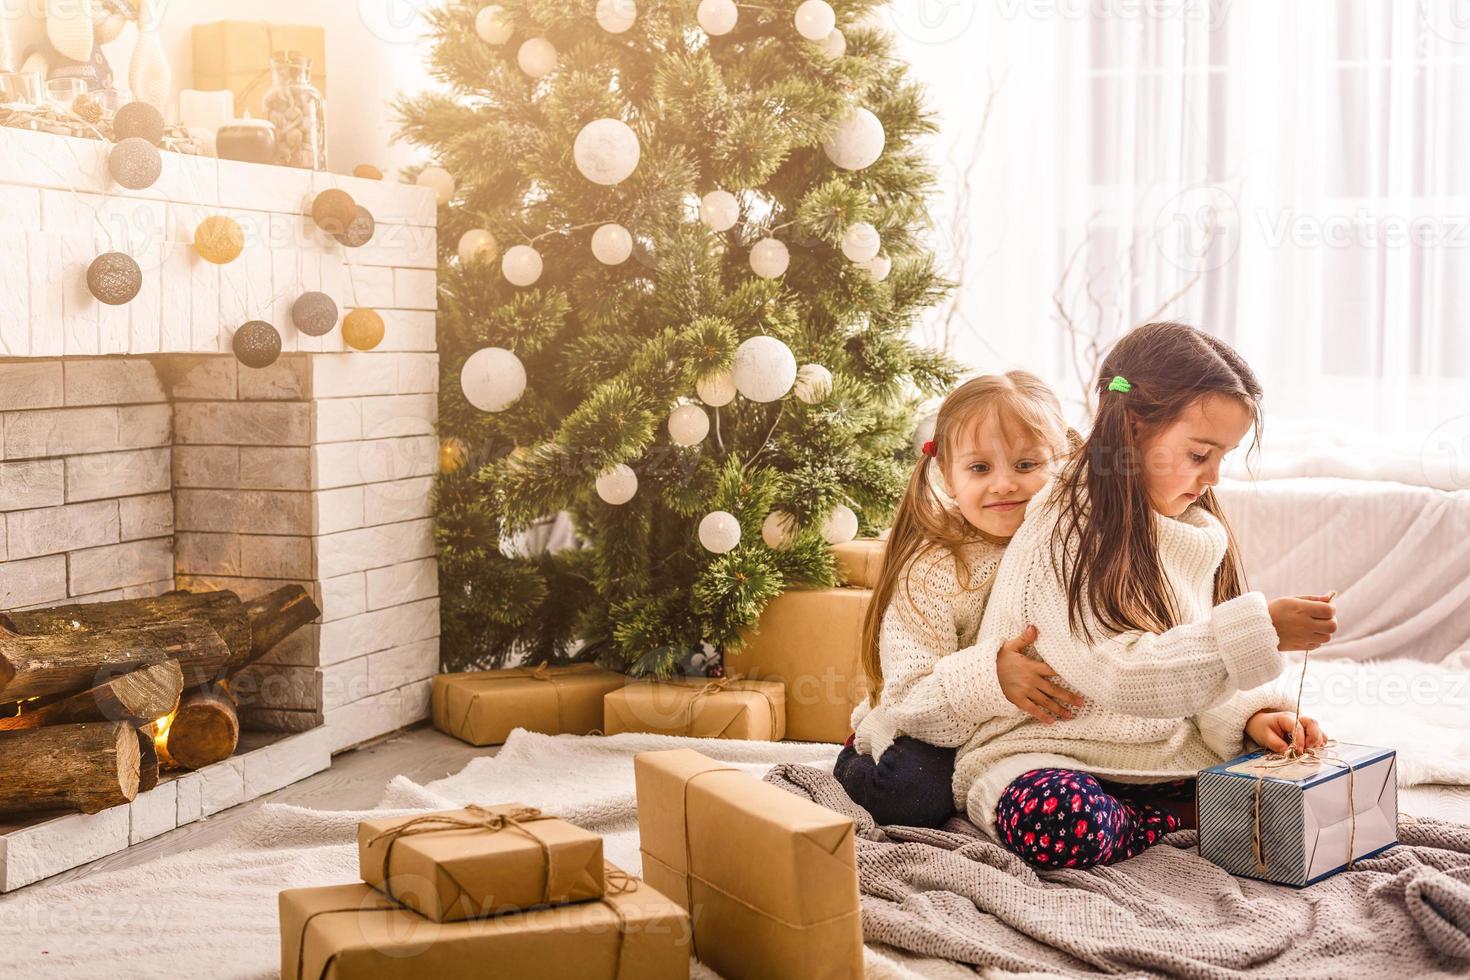 Kinder kleine Schwestern halten Geschenkboxen Innenhintergrund. Was für eine tolle Überraschung. kleine süße Mädchen erhielten Weihnachtsgeschenke. beste Spielzeuge und Weihnachtsgeschenke. Kinderfreunde packen aufgeregt ihre Geschenke aus. foto